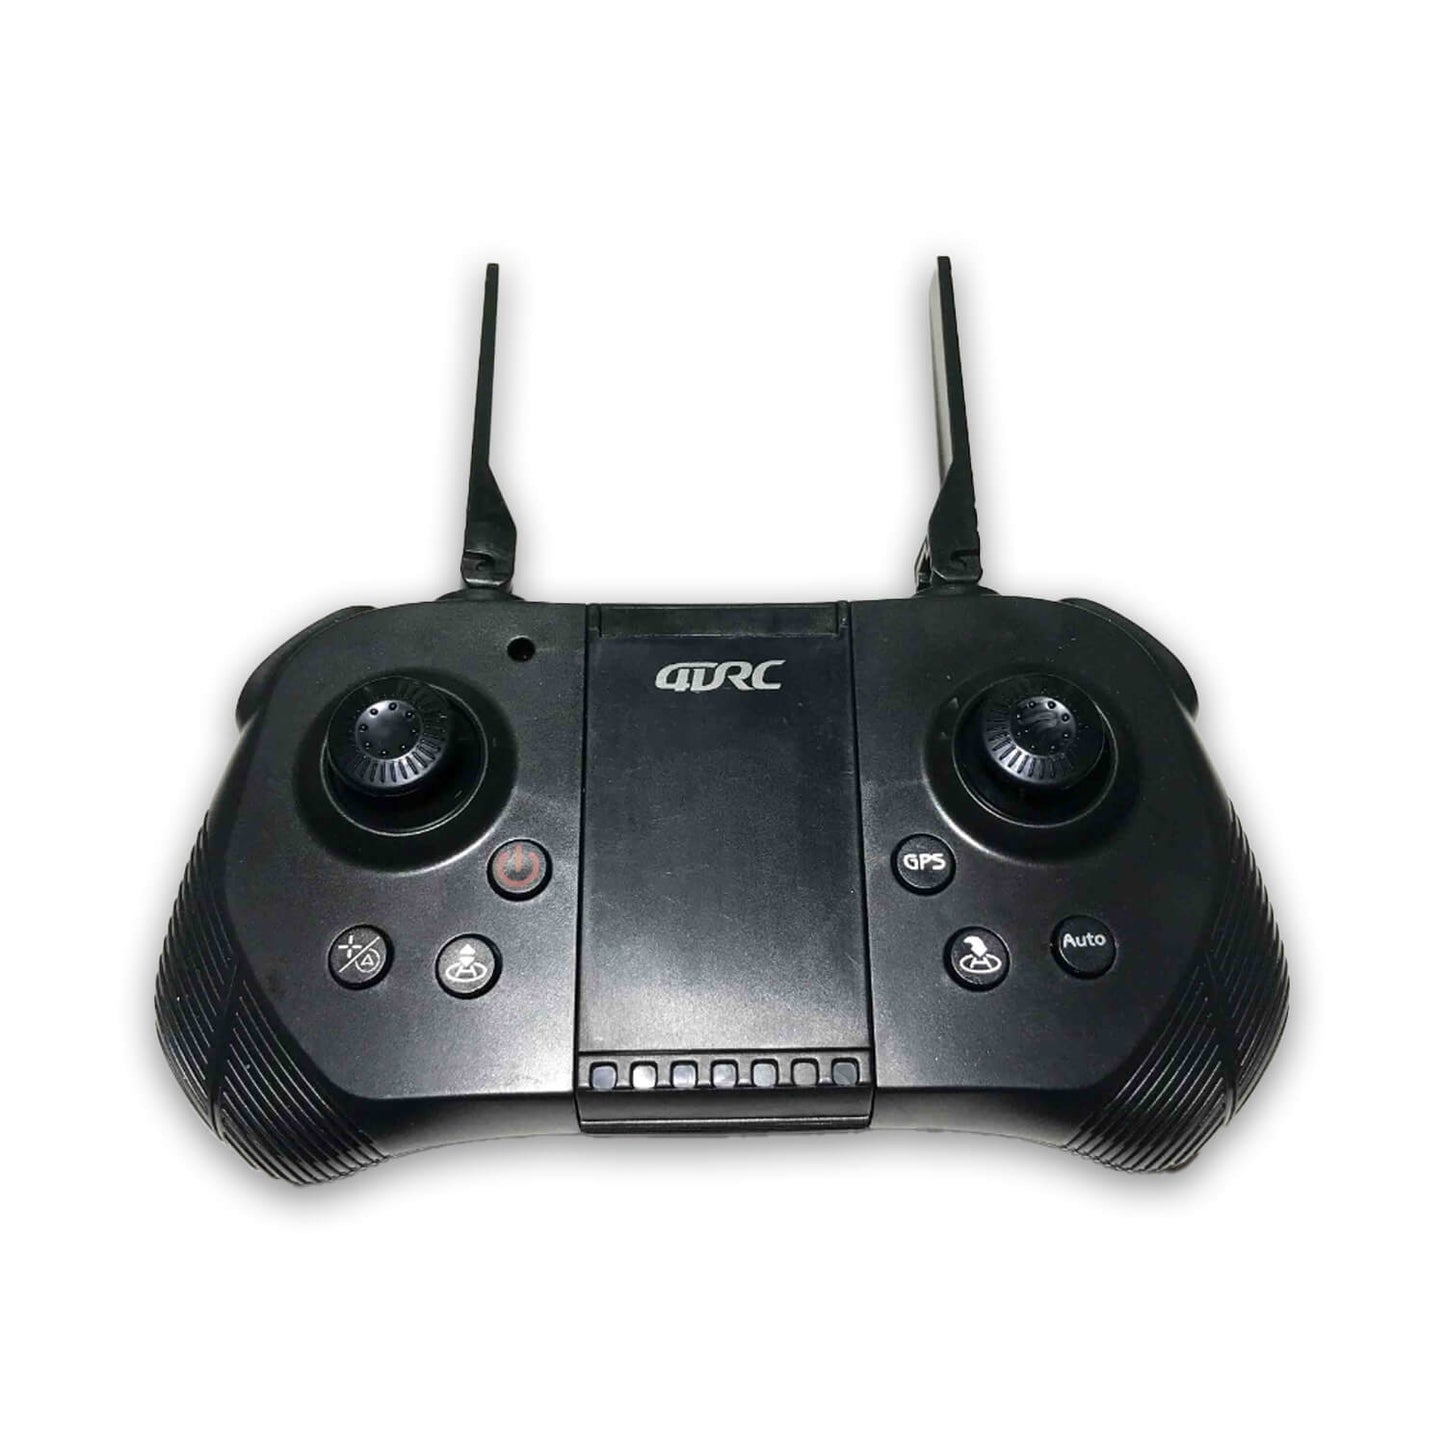 4D-F10 Drone Spare remote control